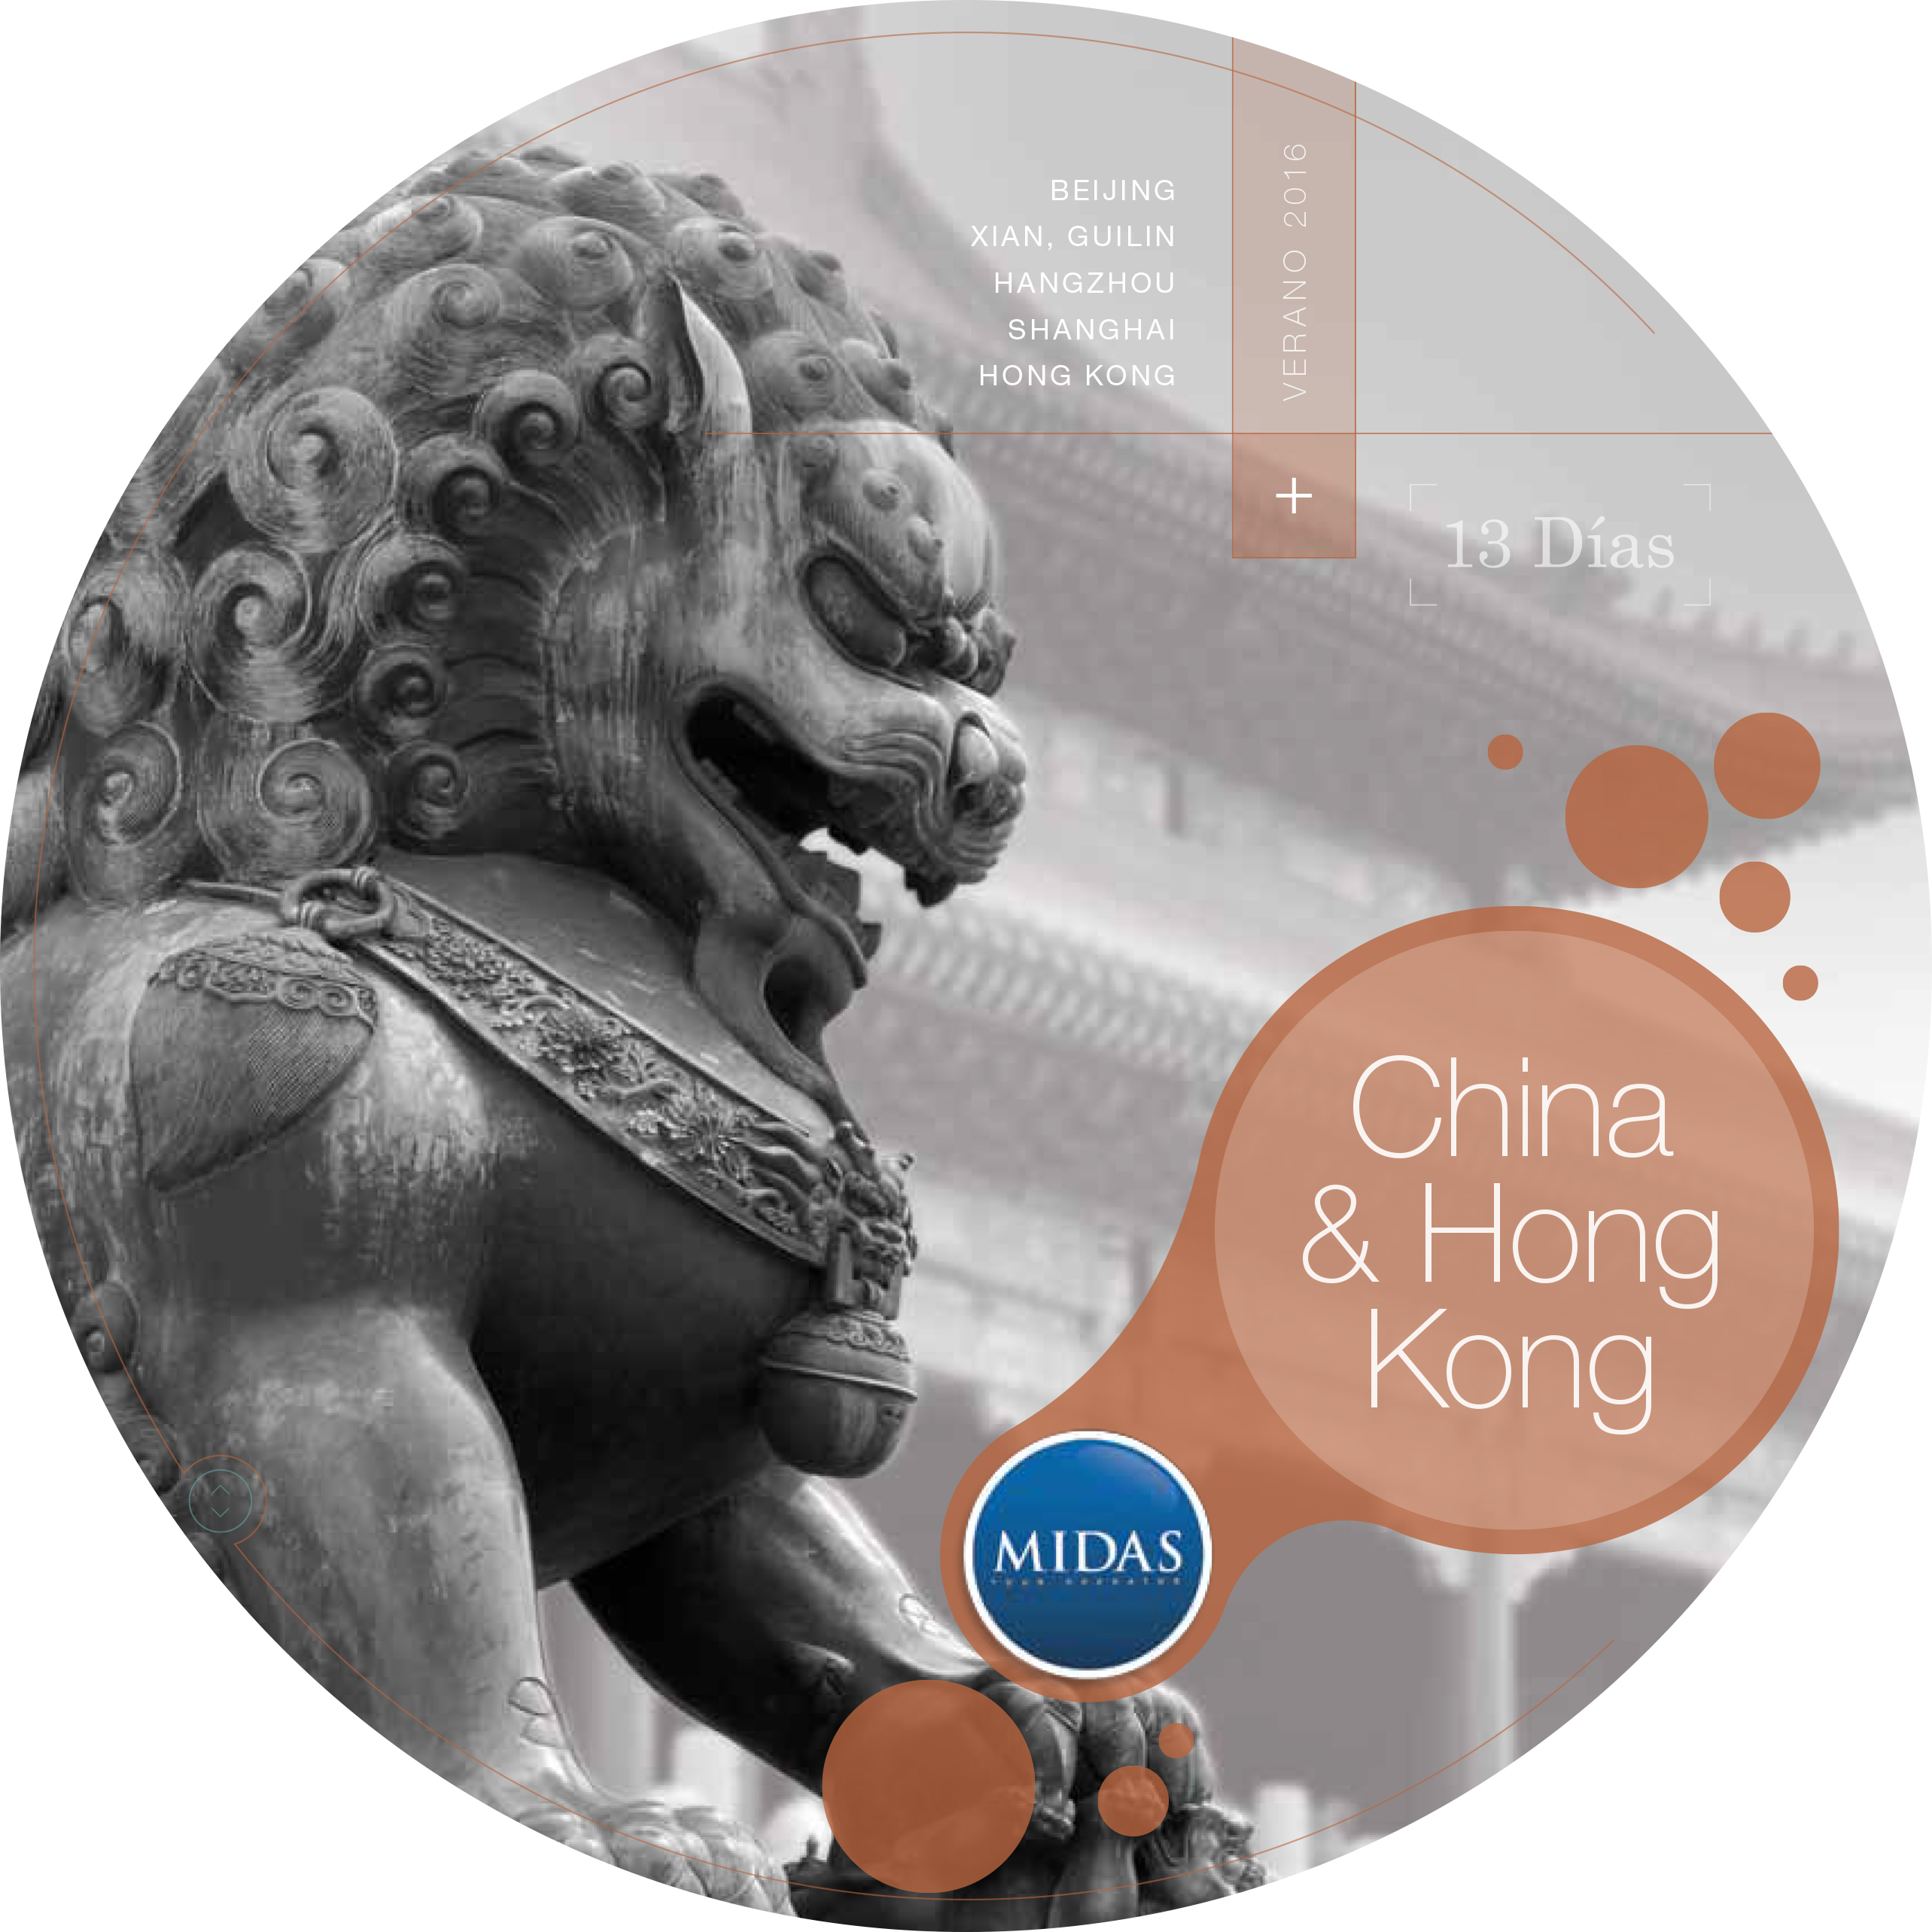 3/10/2016 China y Hong Kong 2016 18D/17N Salidas Grupales King Midas Tour Operator China y Hong Kong 2016 18D/17N Orientados por Expertos China y Hong Kong 2016 18D/17N Salidas : 07 Mayo*, 11 Junio*,